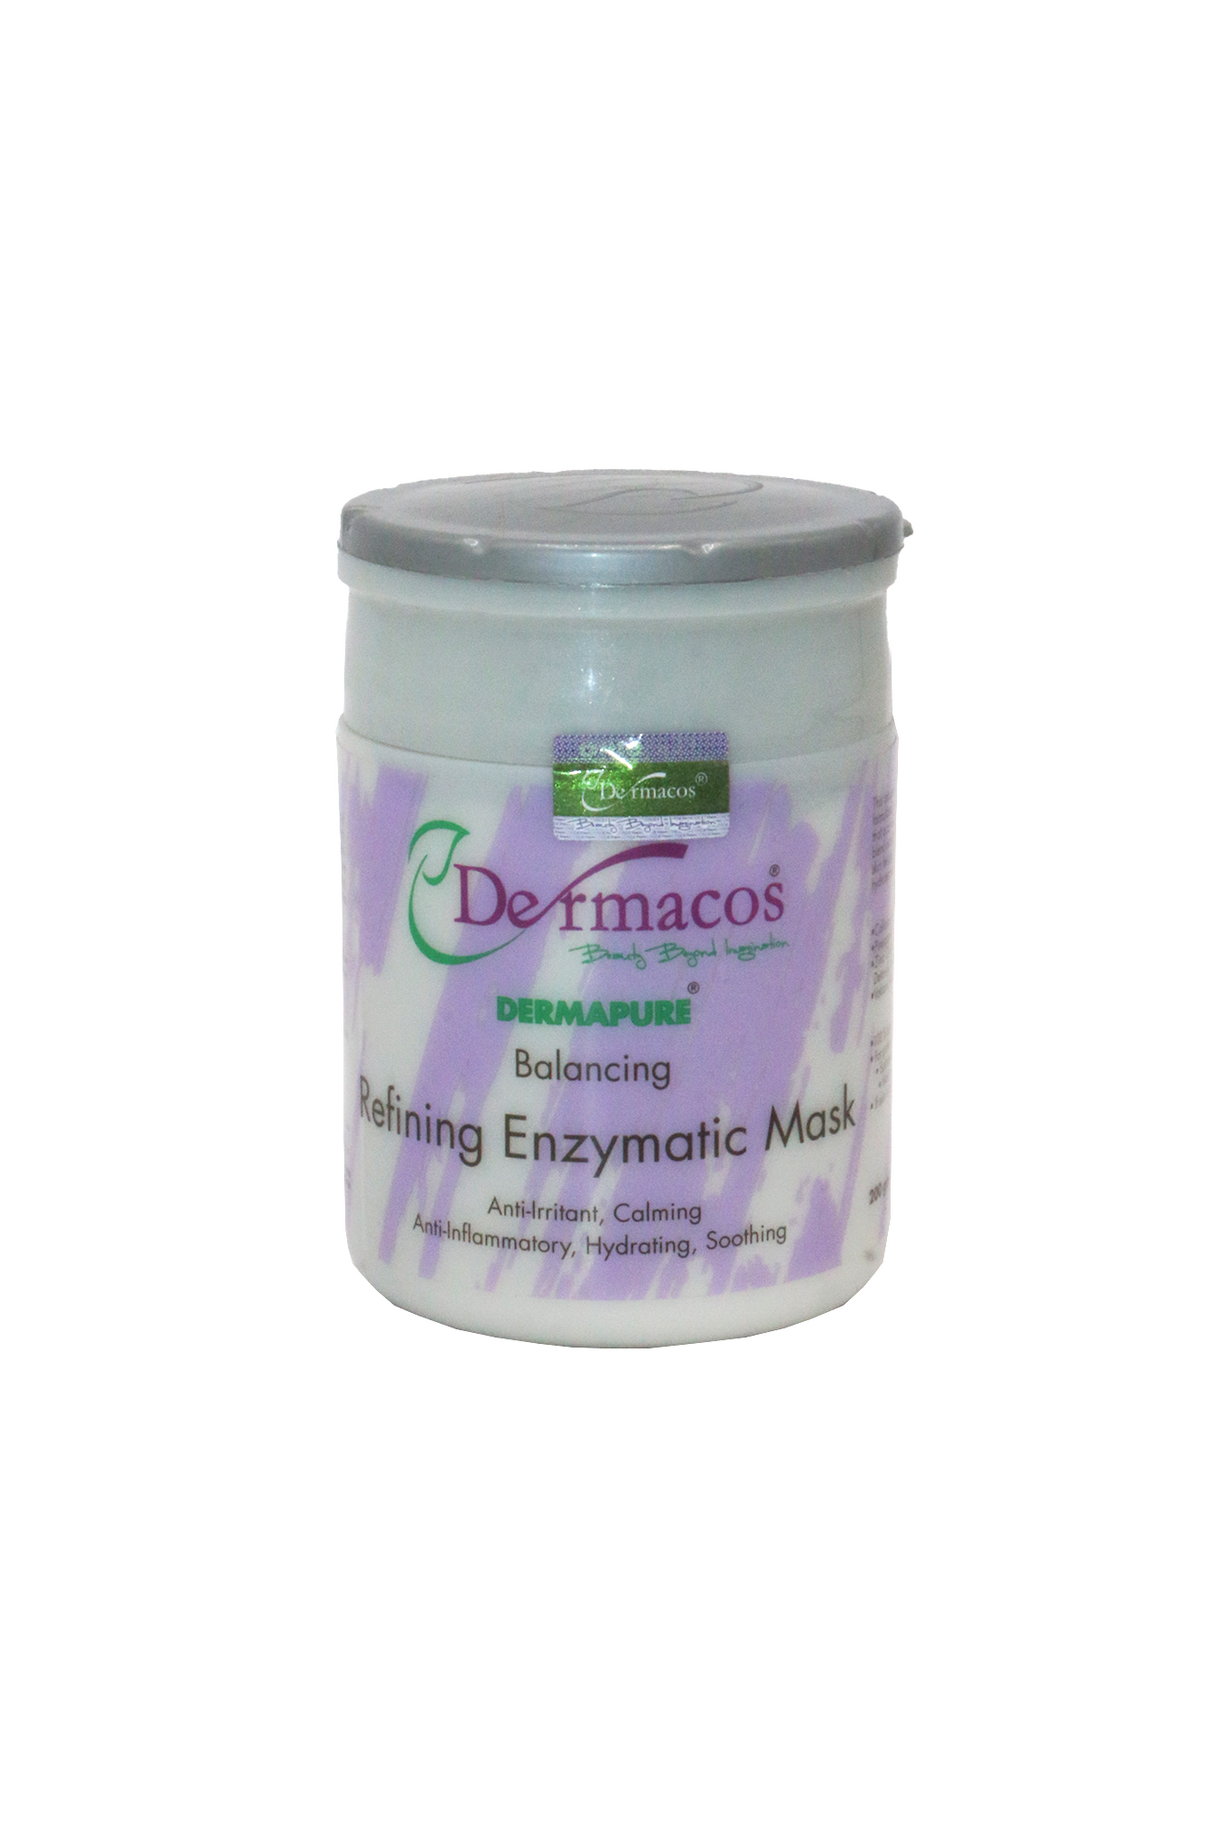 dermacos refining enzymatic mask 200g